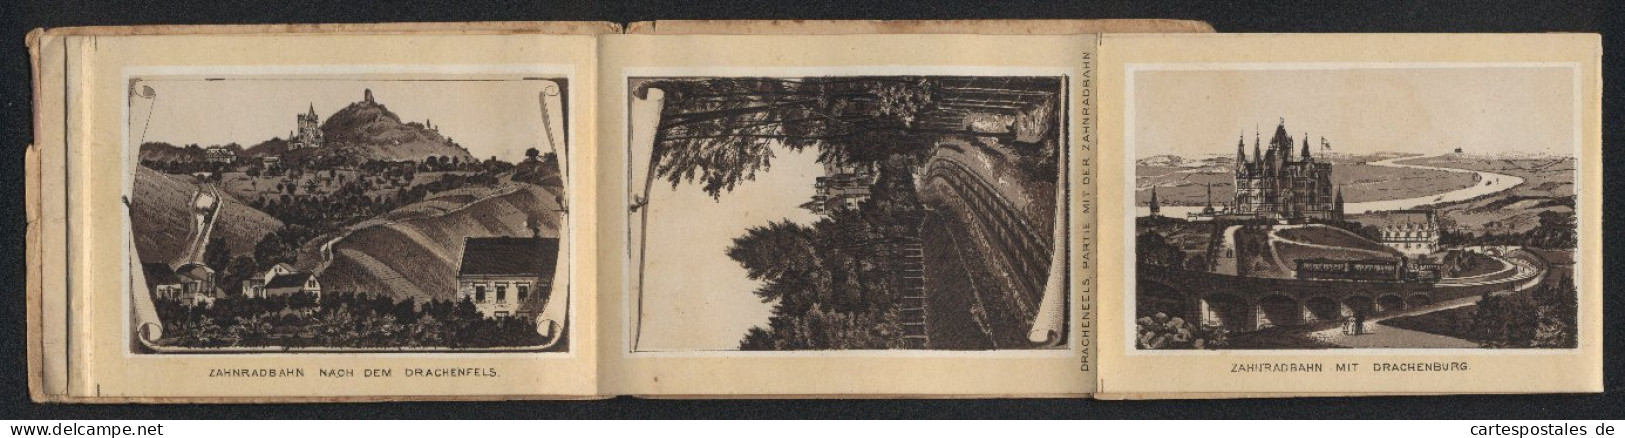 Leporello-Album Drachenfels Mit 12 Lithographie-Ansichten, Zahnradbahn Mit Drachenburg BahnhofRolandseck, Rolandsbogen  - Litografia